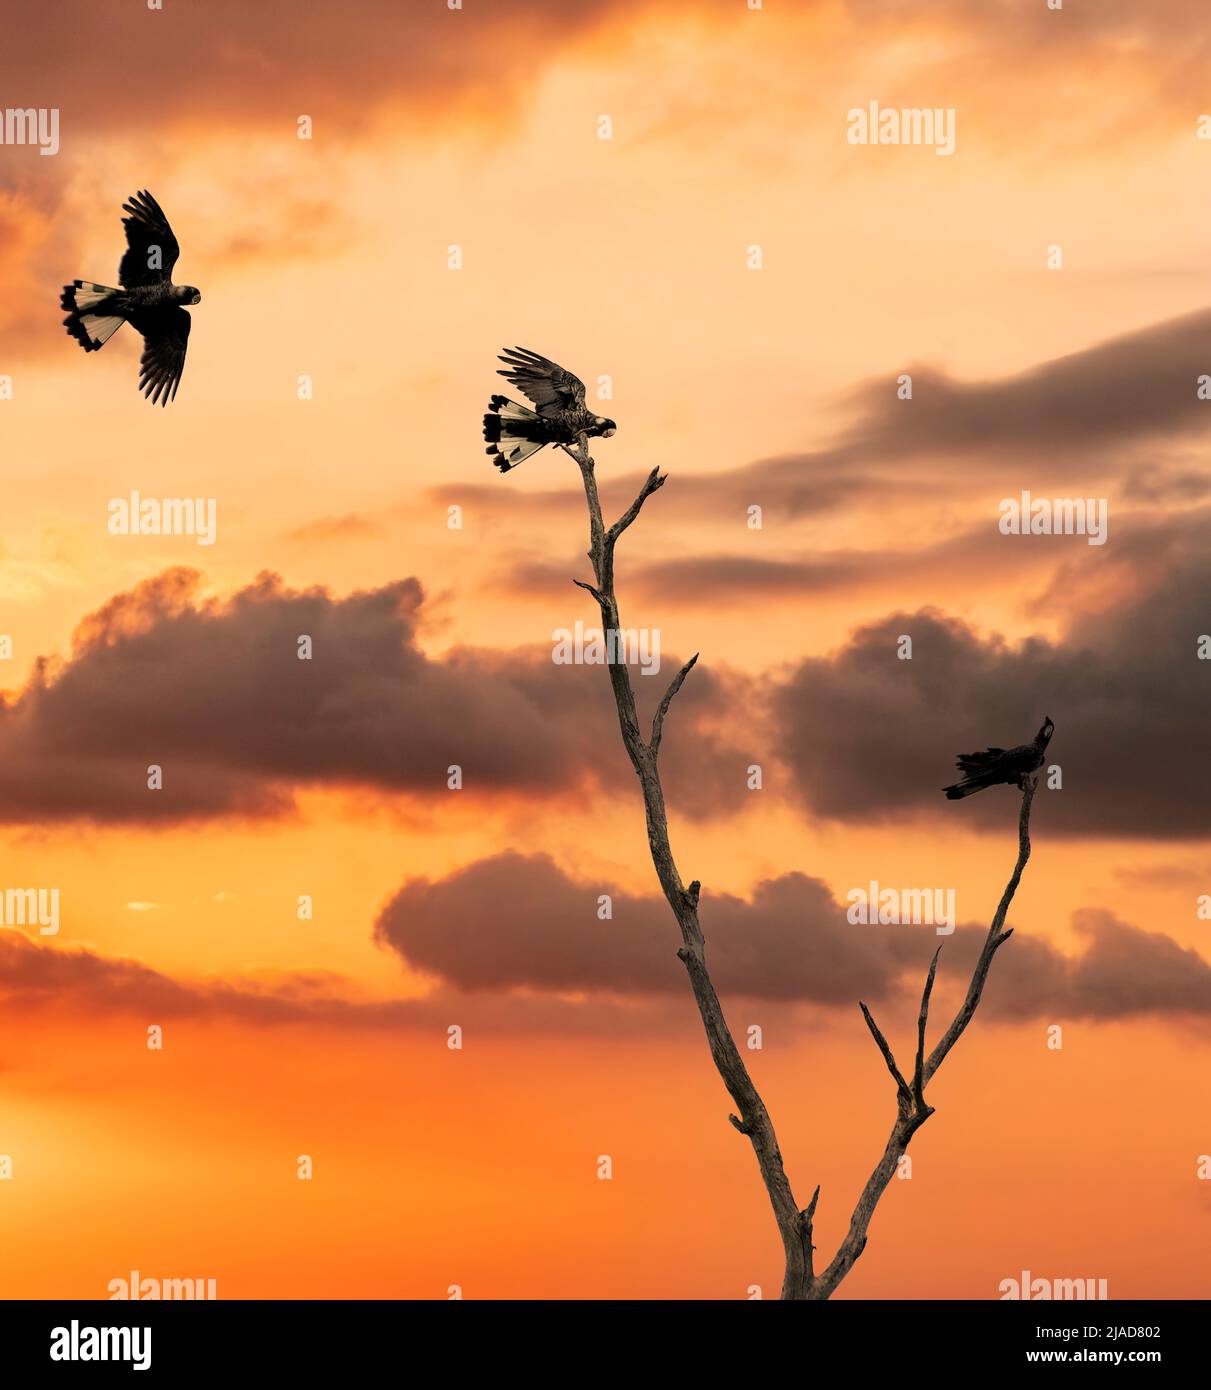 Silueta de tres cacatúas negras de pico corto (Calyptorhynchus latirostris) en vuelo y encaramado en un árbol al atardecer, Australia Foto de stock